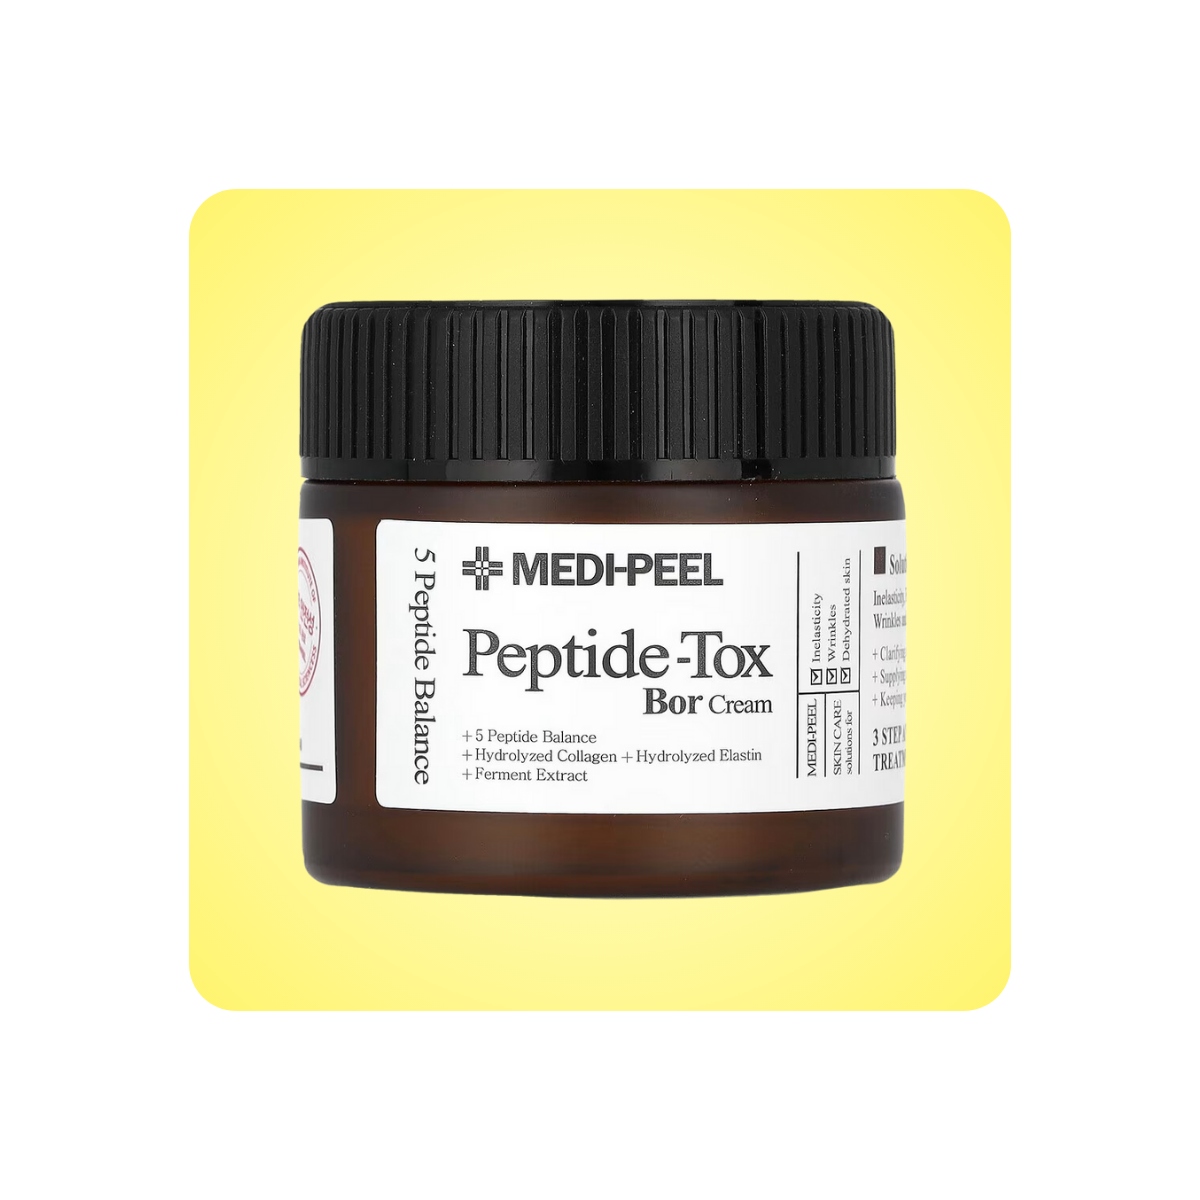 Emulsiones y Cremas al mejor precio: Crema Medi-Peel Peptide-Tox Bor Cream 50ml de Medi-peel en Skin Thinks - Piel Sensible